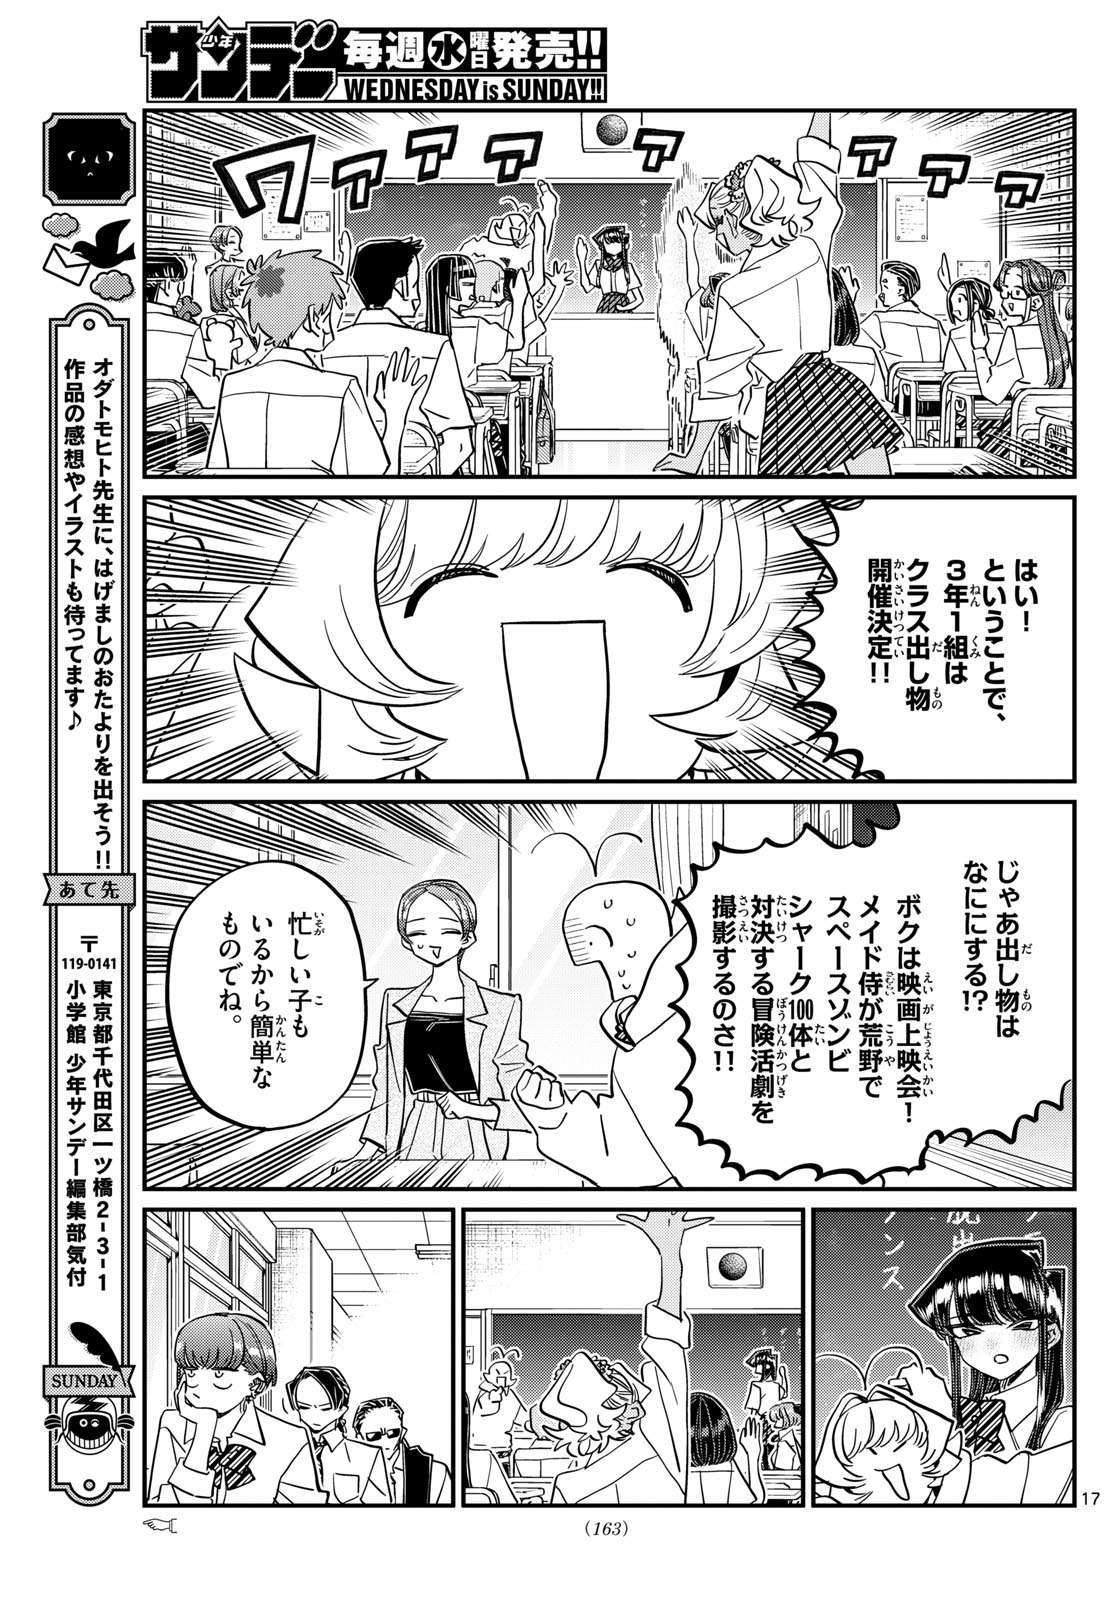 Komi-san wa Komyushou Desu - Chapter 447 - Page 5